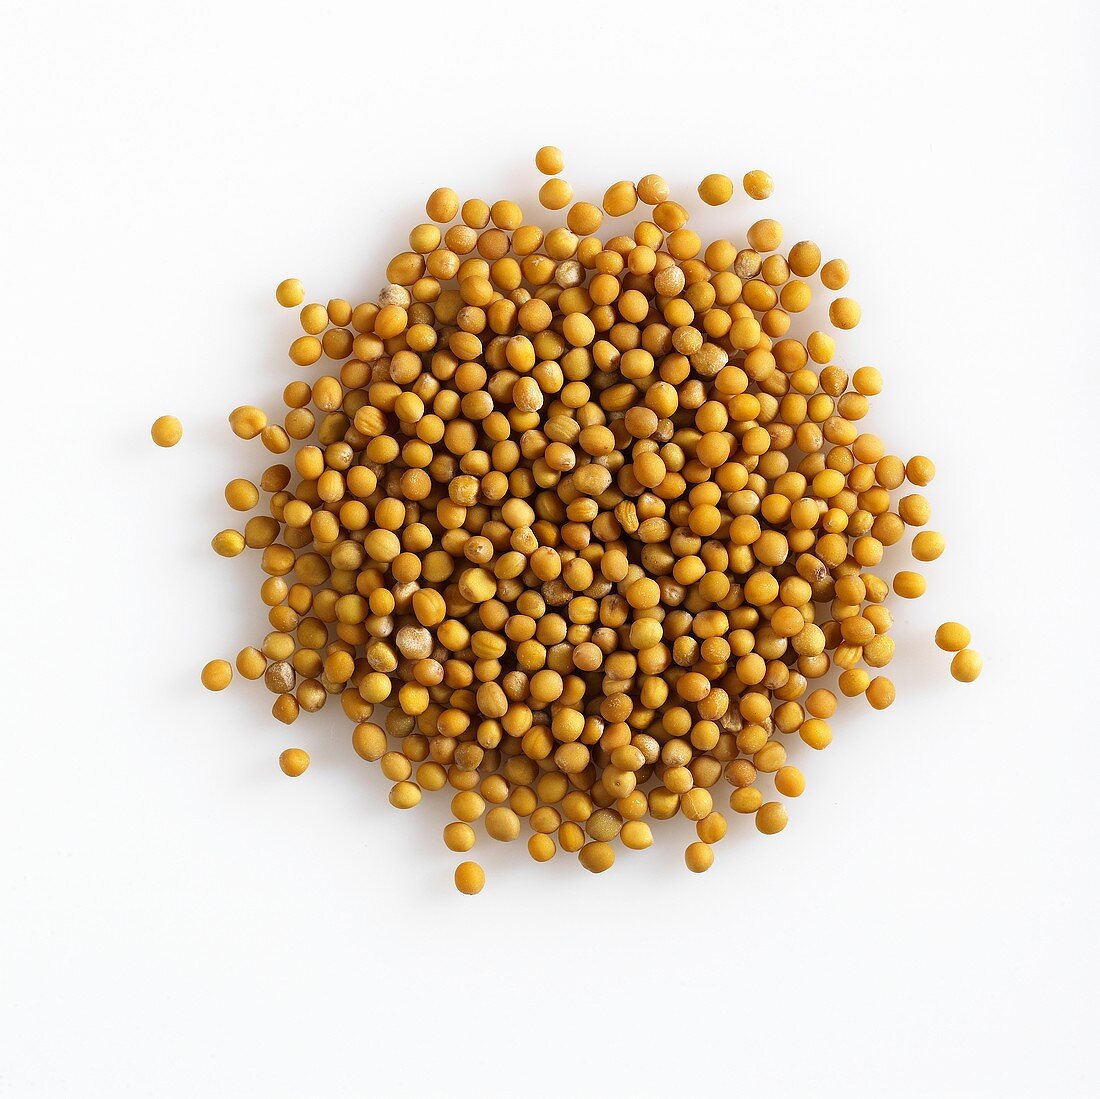 A heap of mustard seeds